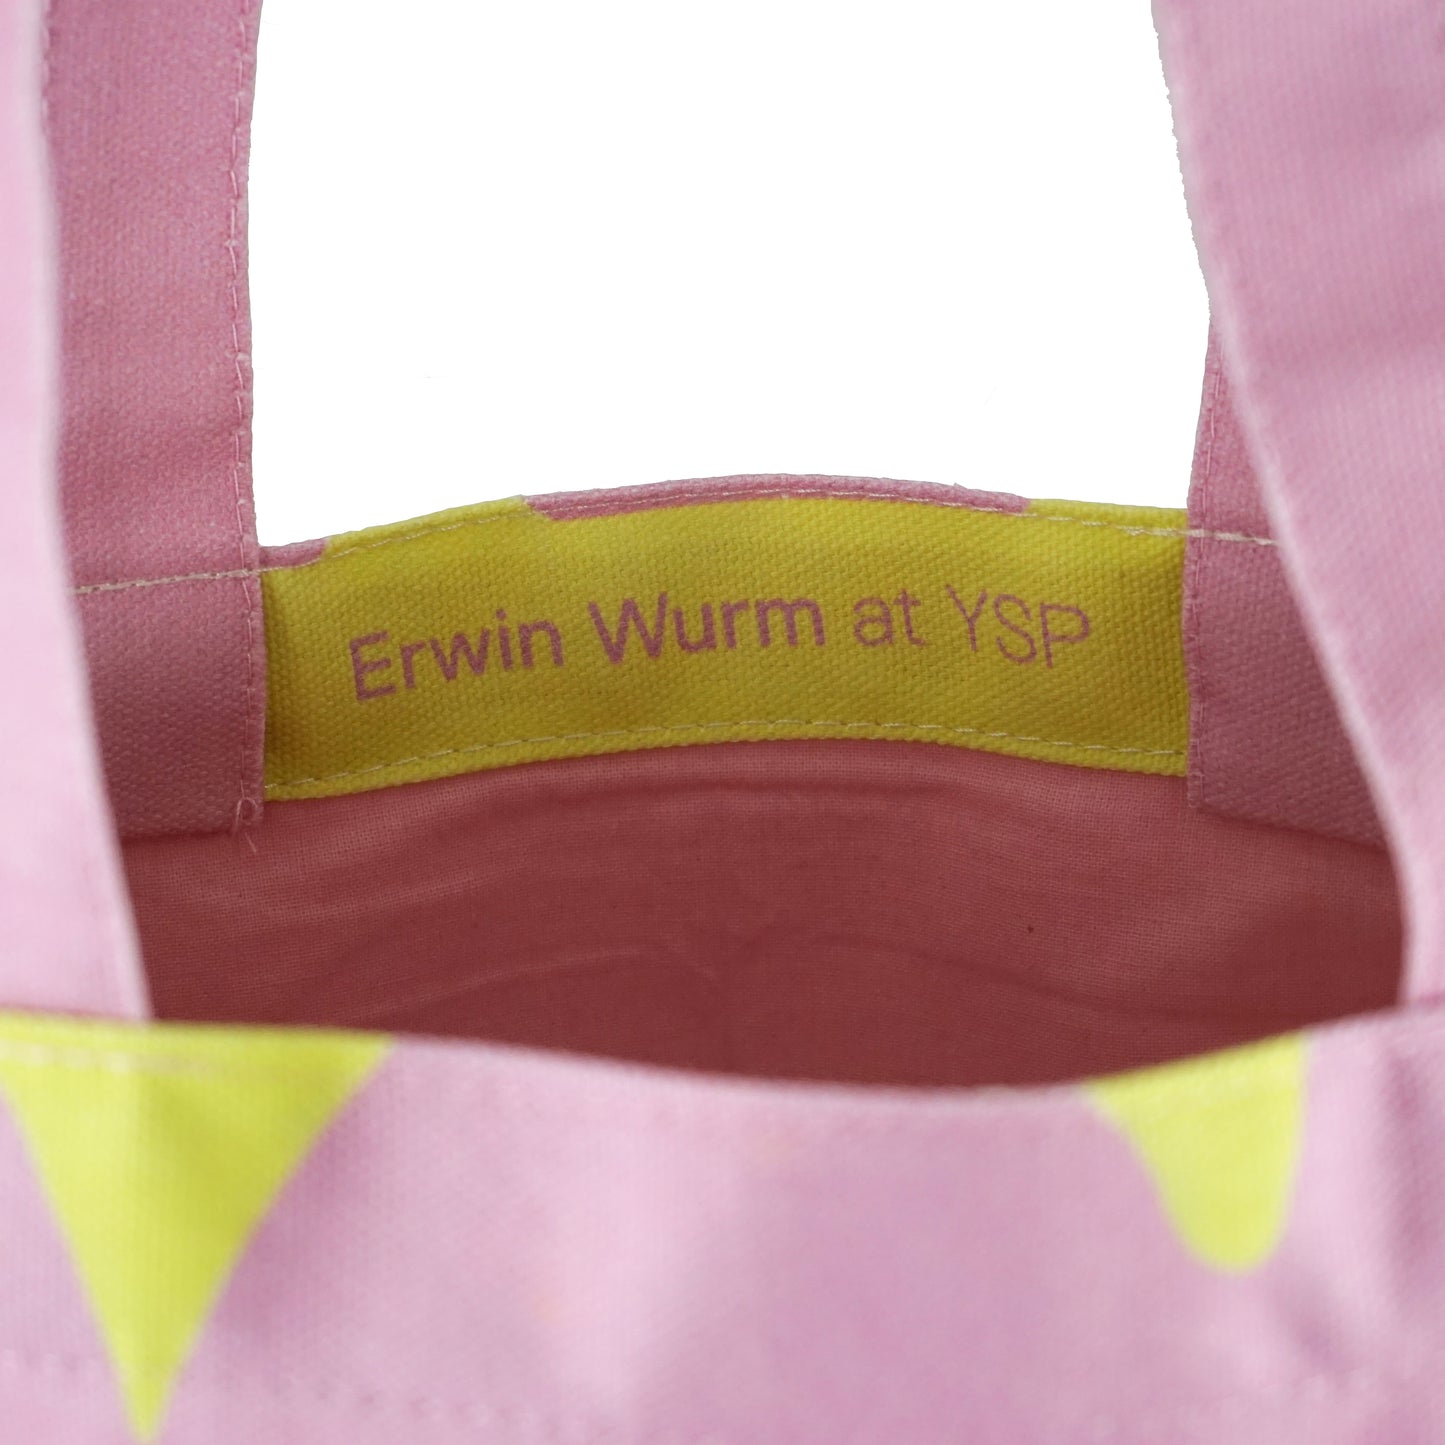 Erwin Wurm: Tote Bag